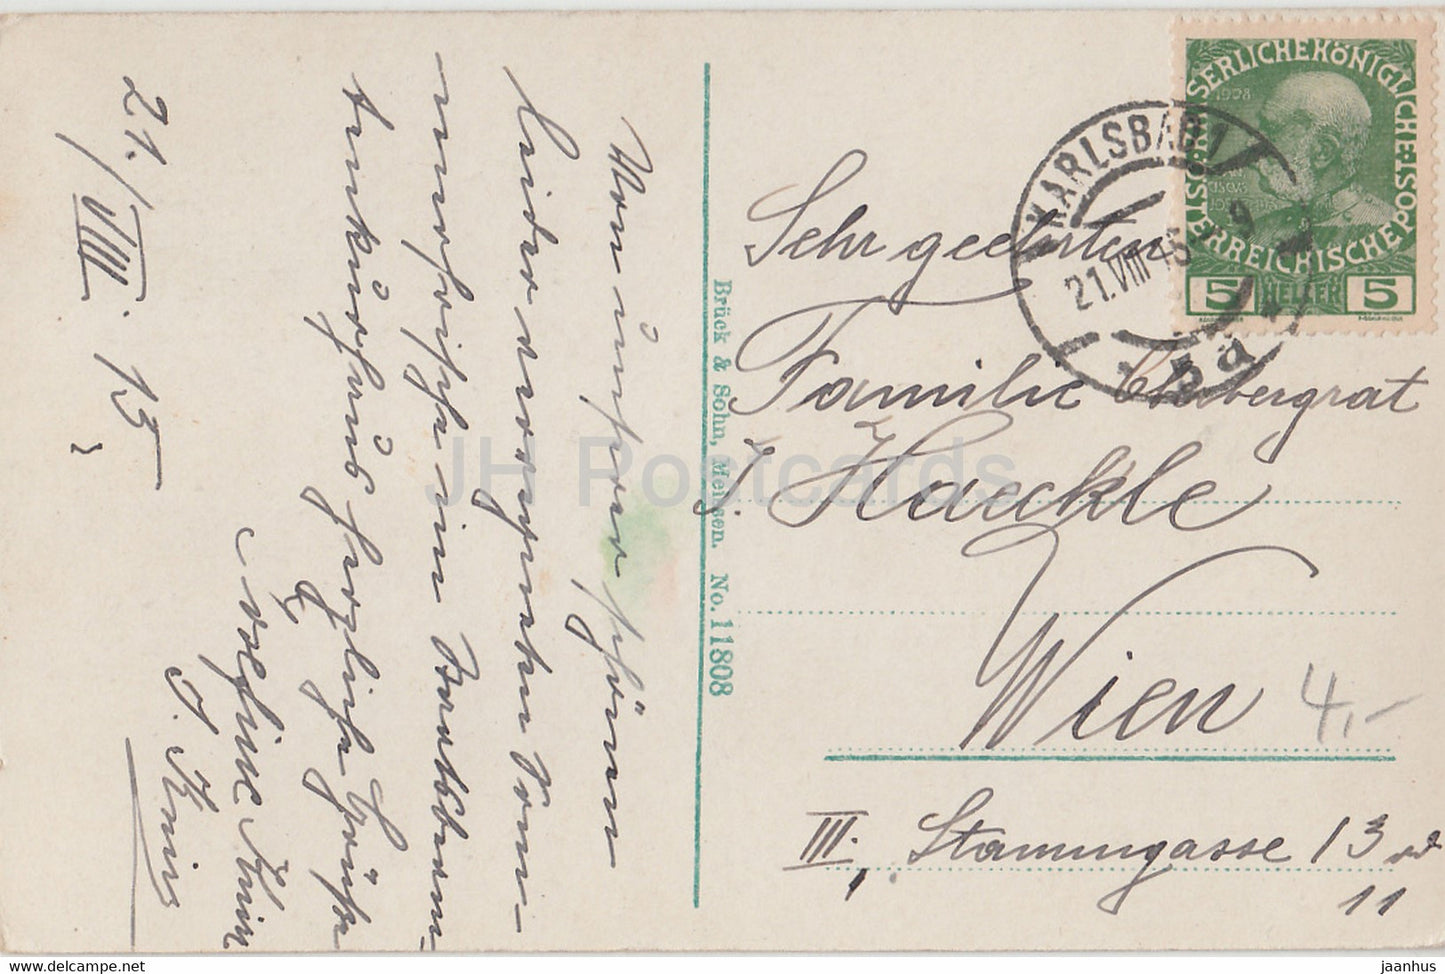 Karlovy Vary - Karlsbad - Muhlbrunnen Kolonnade - 11808 - carte postale ancienne - 1915 - Tchécoslovaquie - République tchèque - utilisé